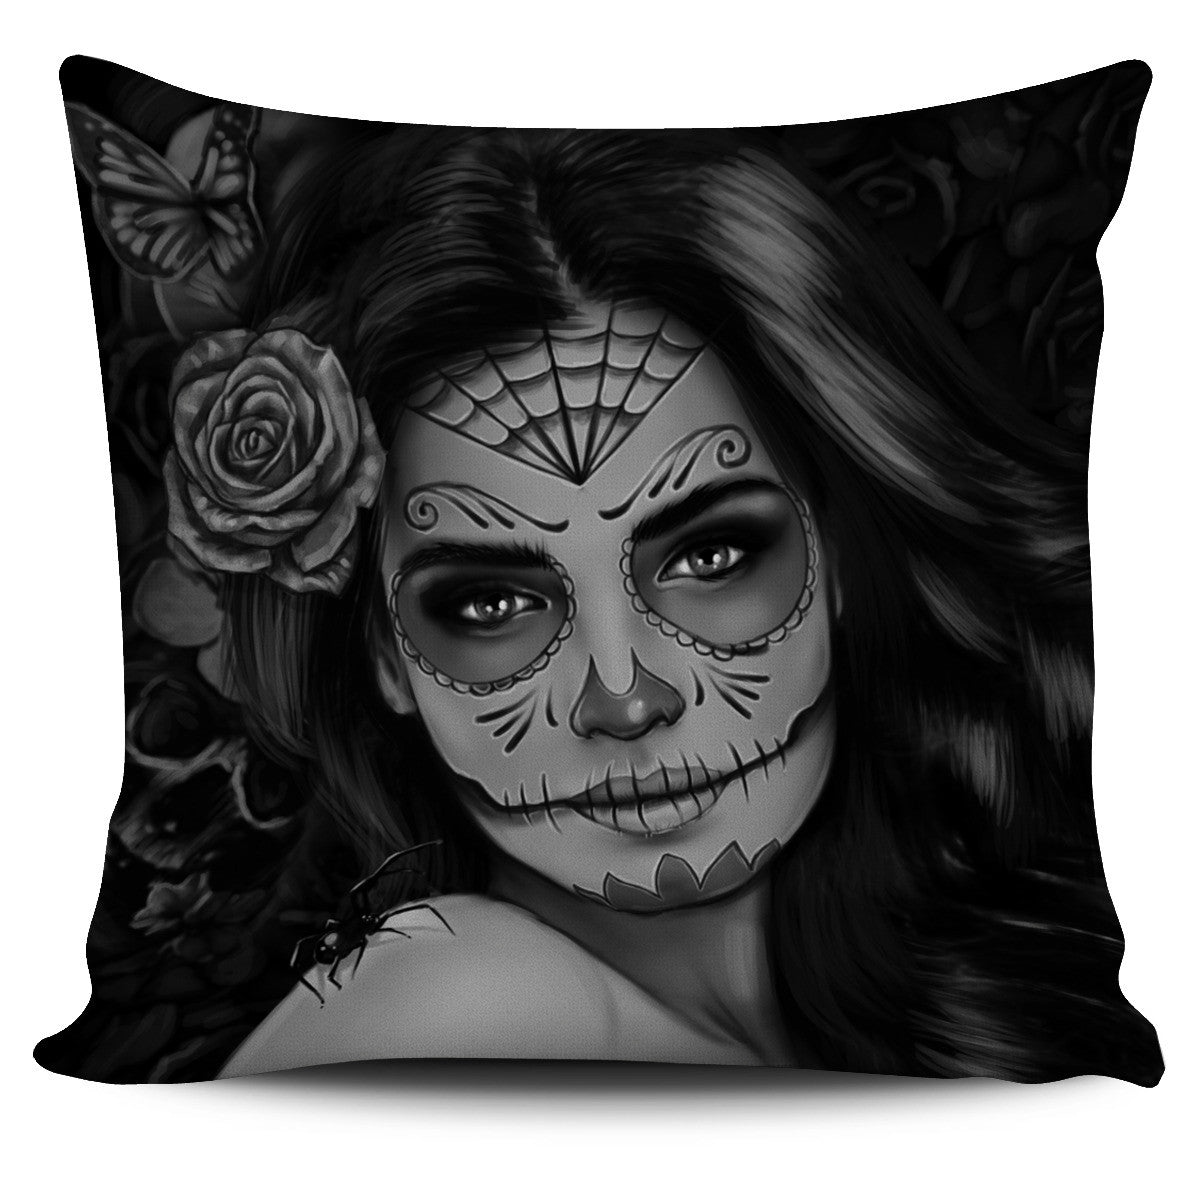 Tattoo Calavera Girl Pillow Cover - Collection 2